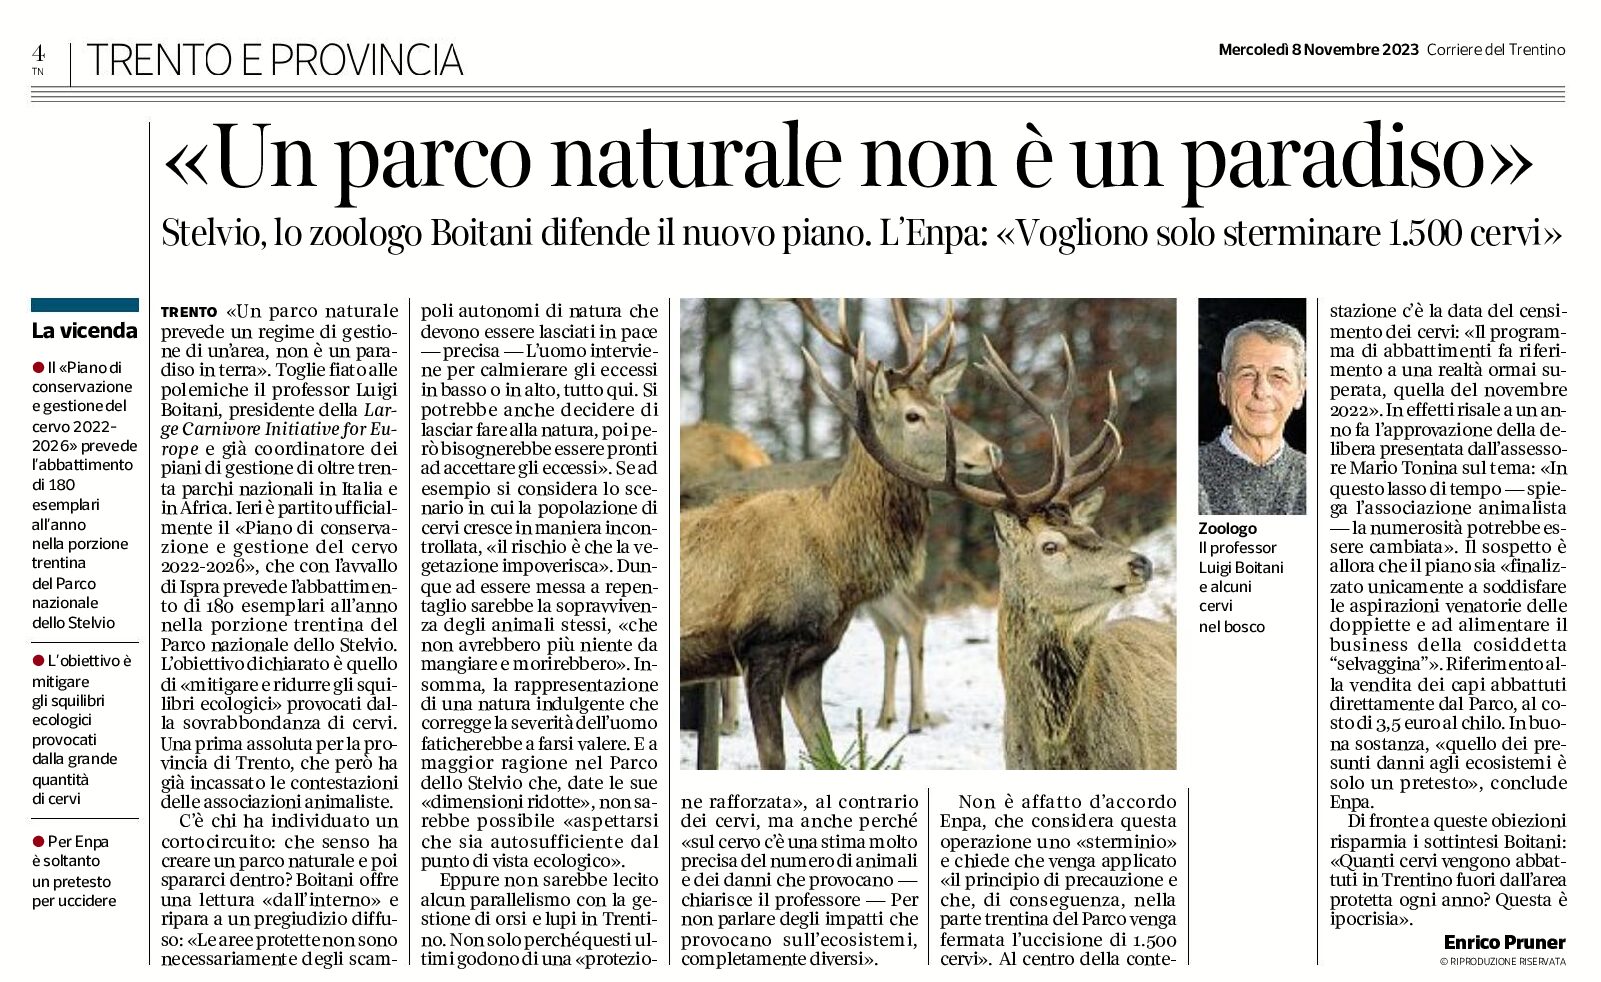 Cervi: Enpa, un parco naturale non è un paradiso